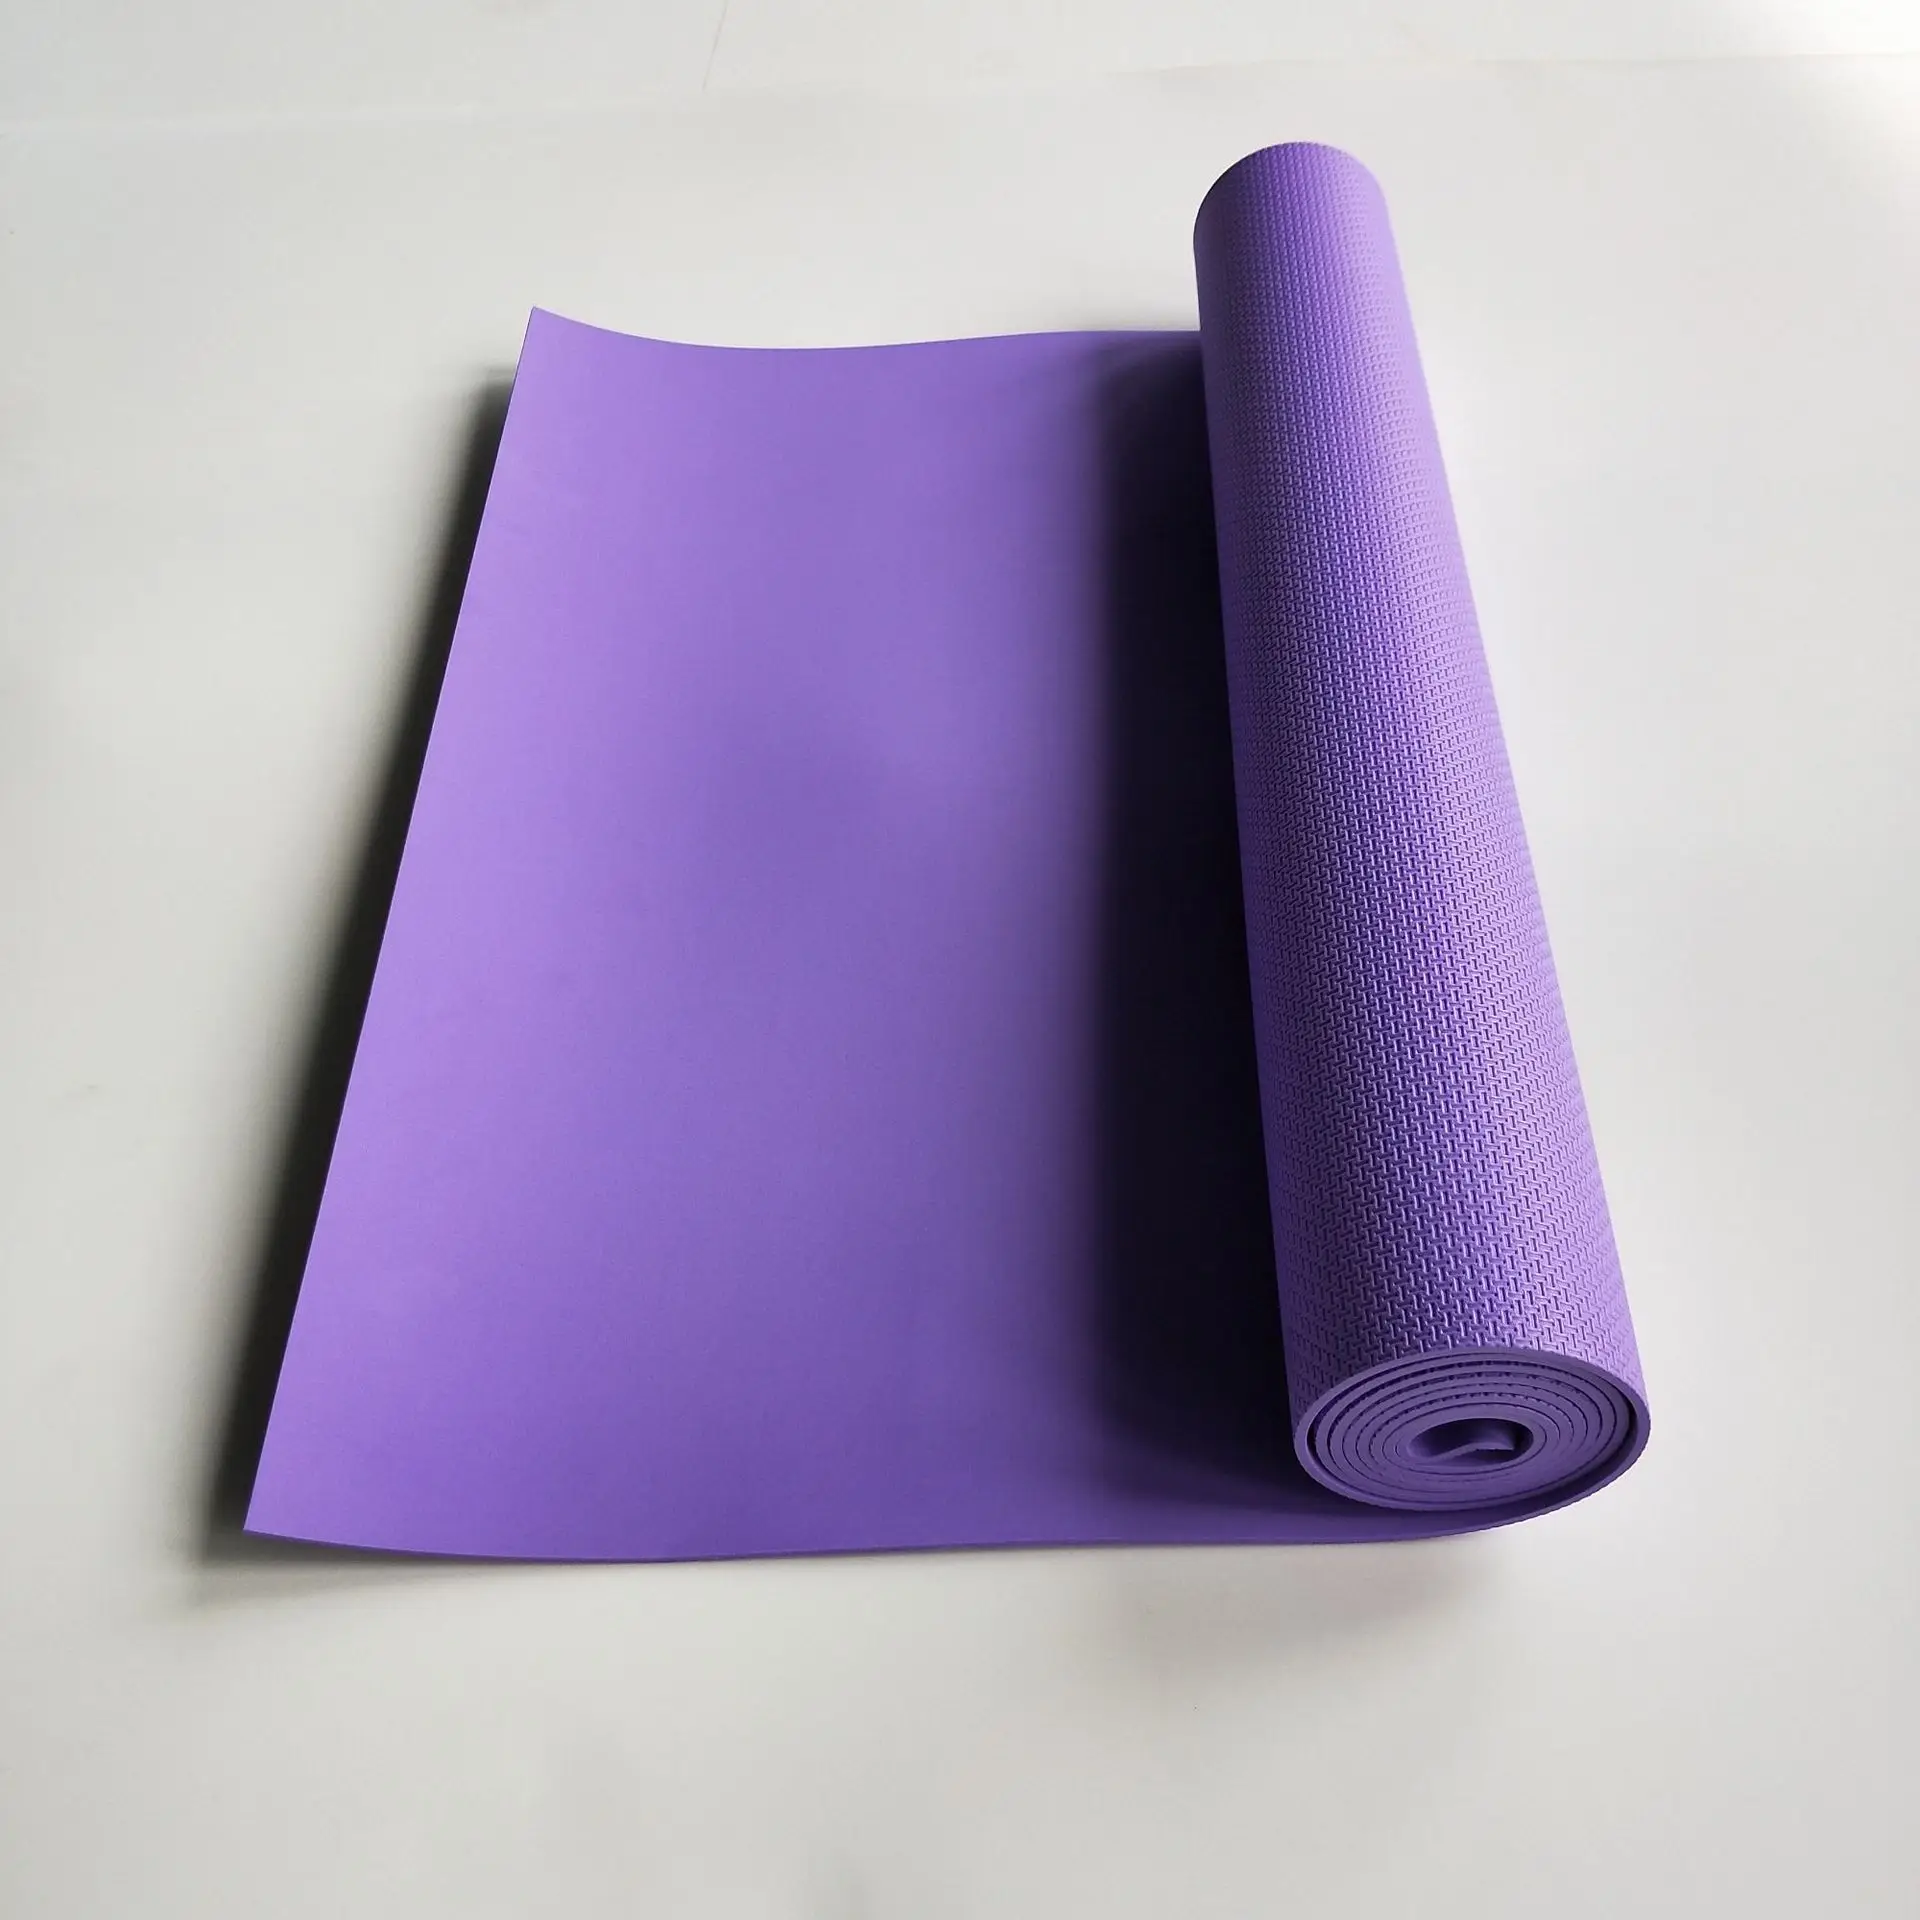 4 мм EVA коврики для йоги противоскользящие для занятий йогой спортивные женские коврики EVA гимнастическое одеяло для упражнений подушка для здоровья фитнес Спорт потеря